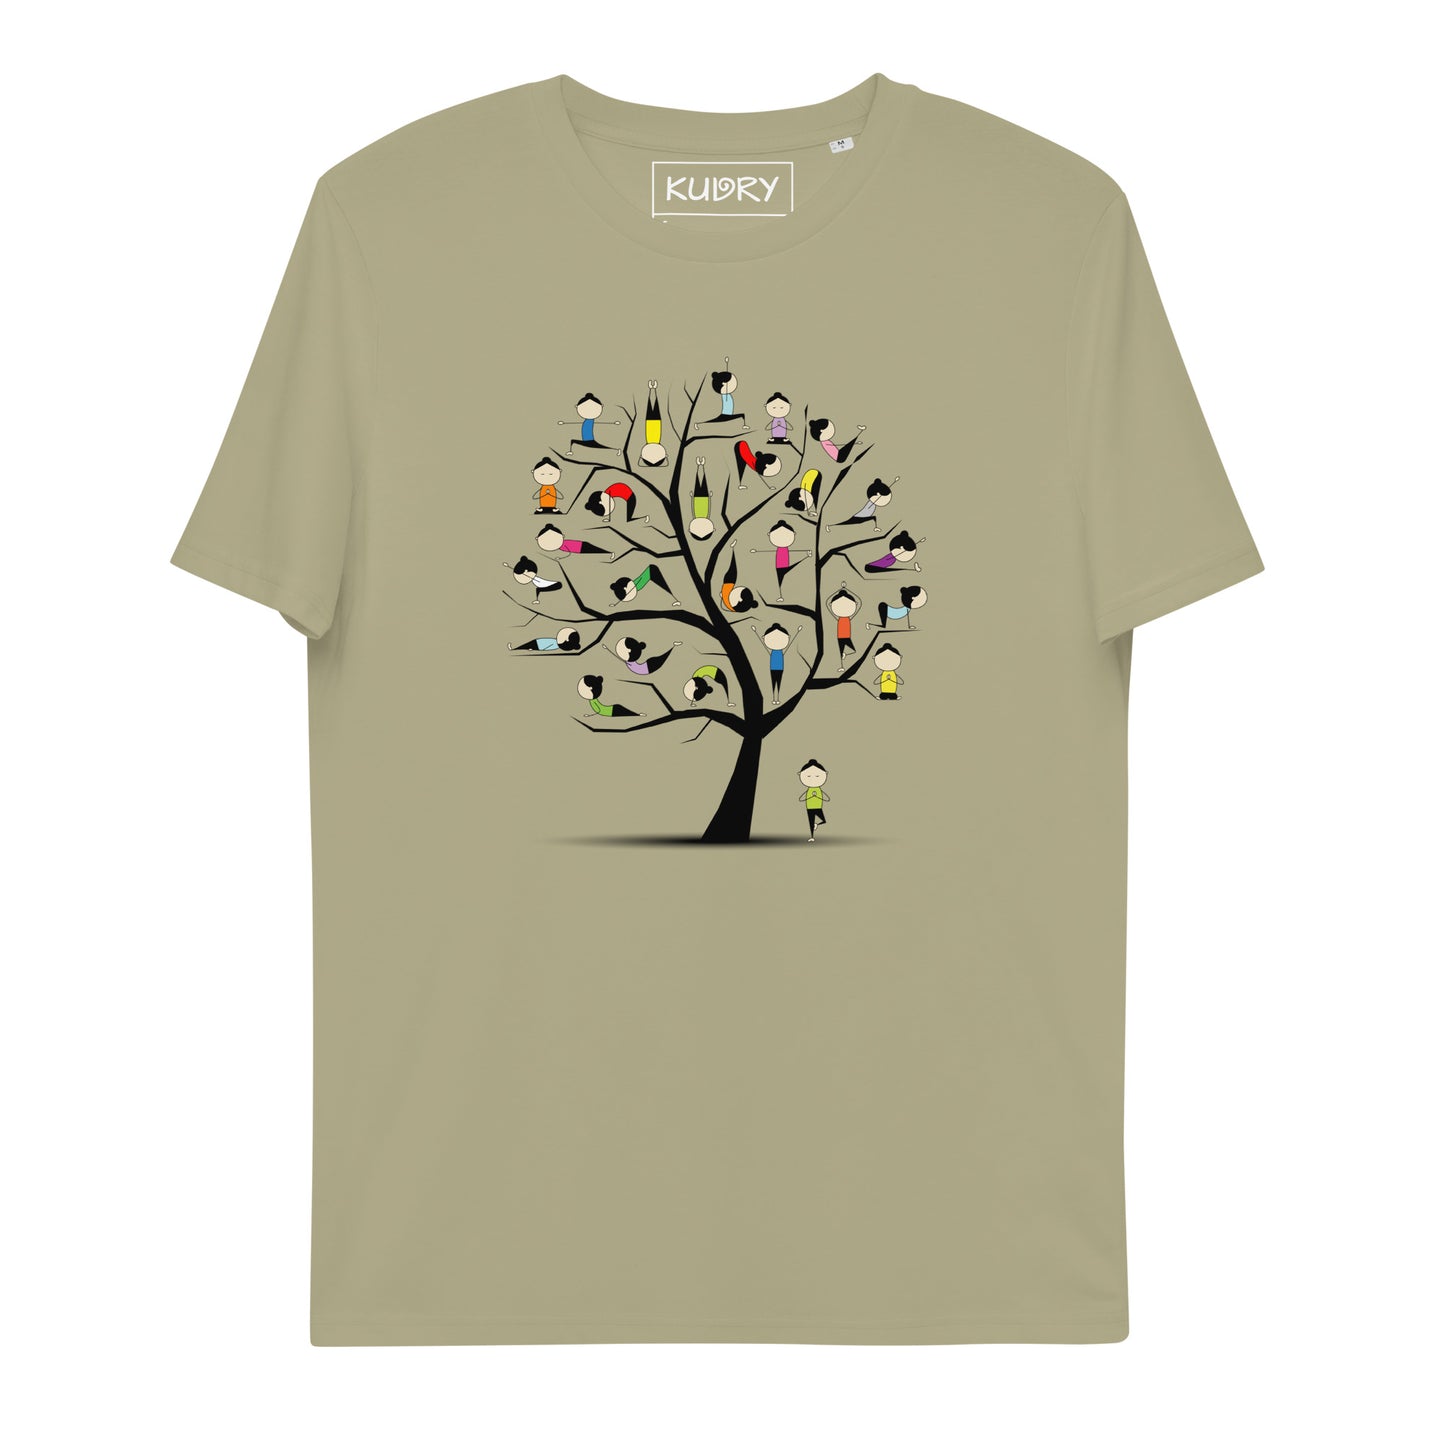 Unisex organic cotton t-shirt Yoga kudrylab